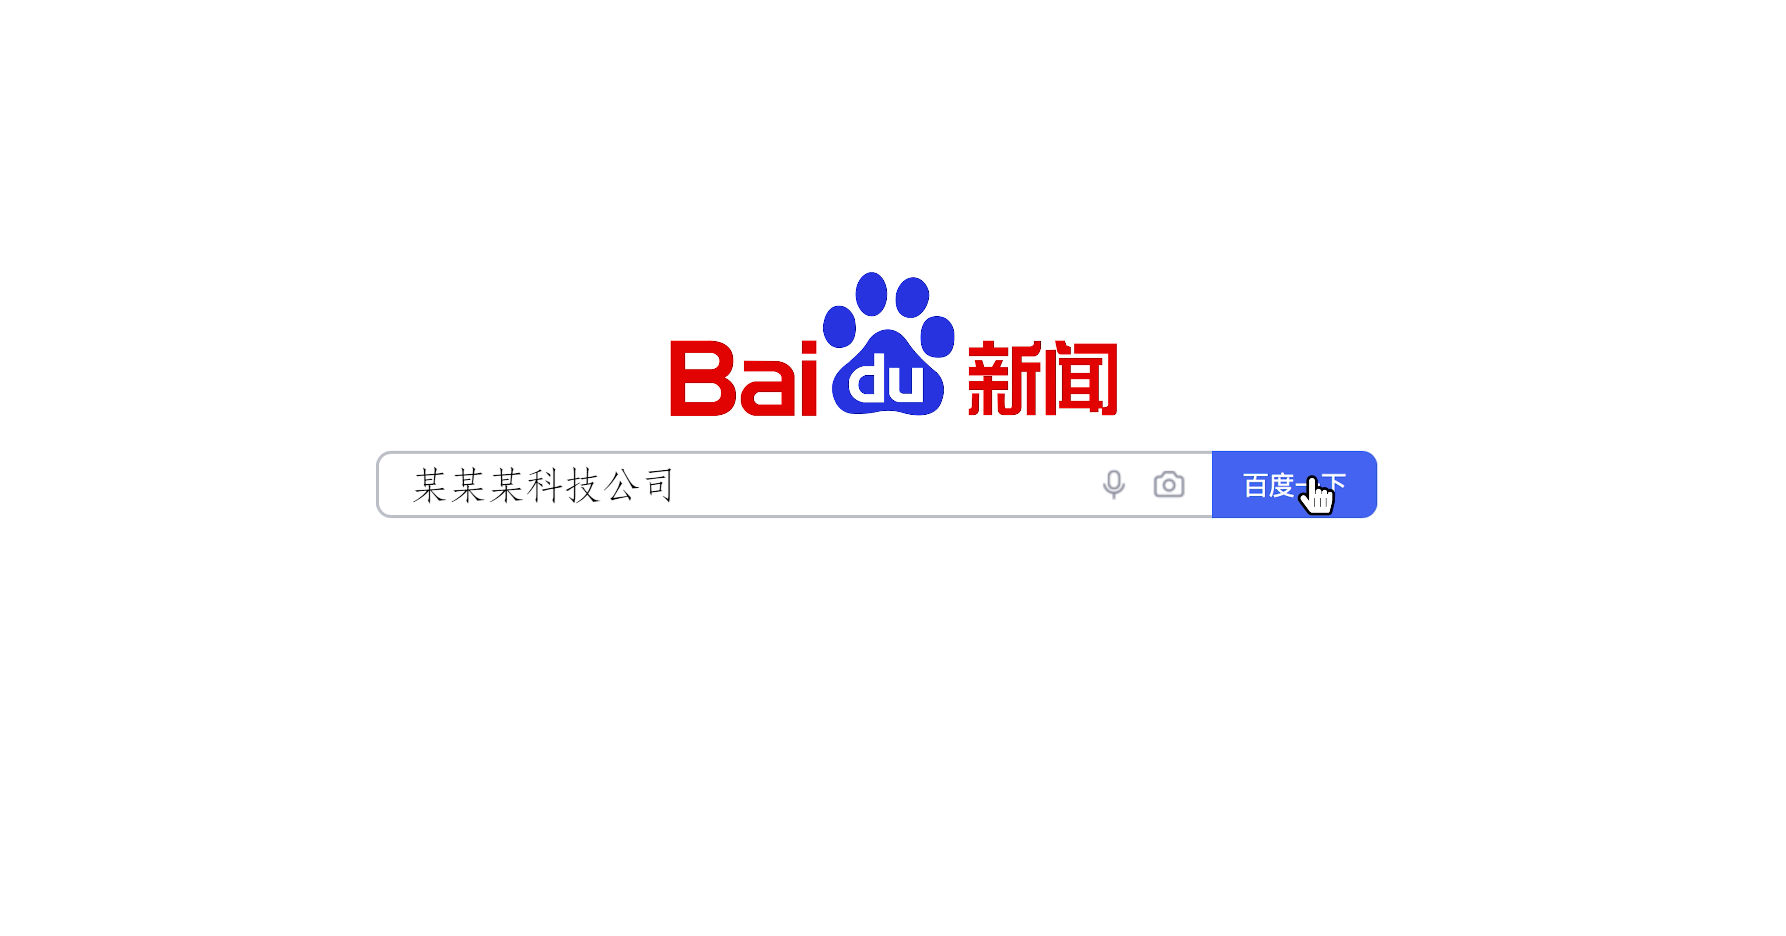 中文搜索引擎百度logo图片-图行天下素材网